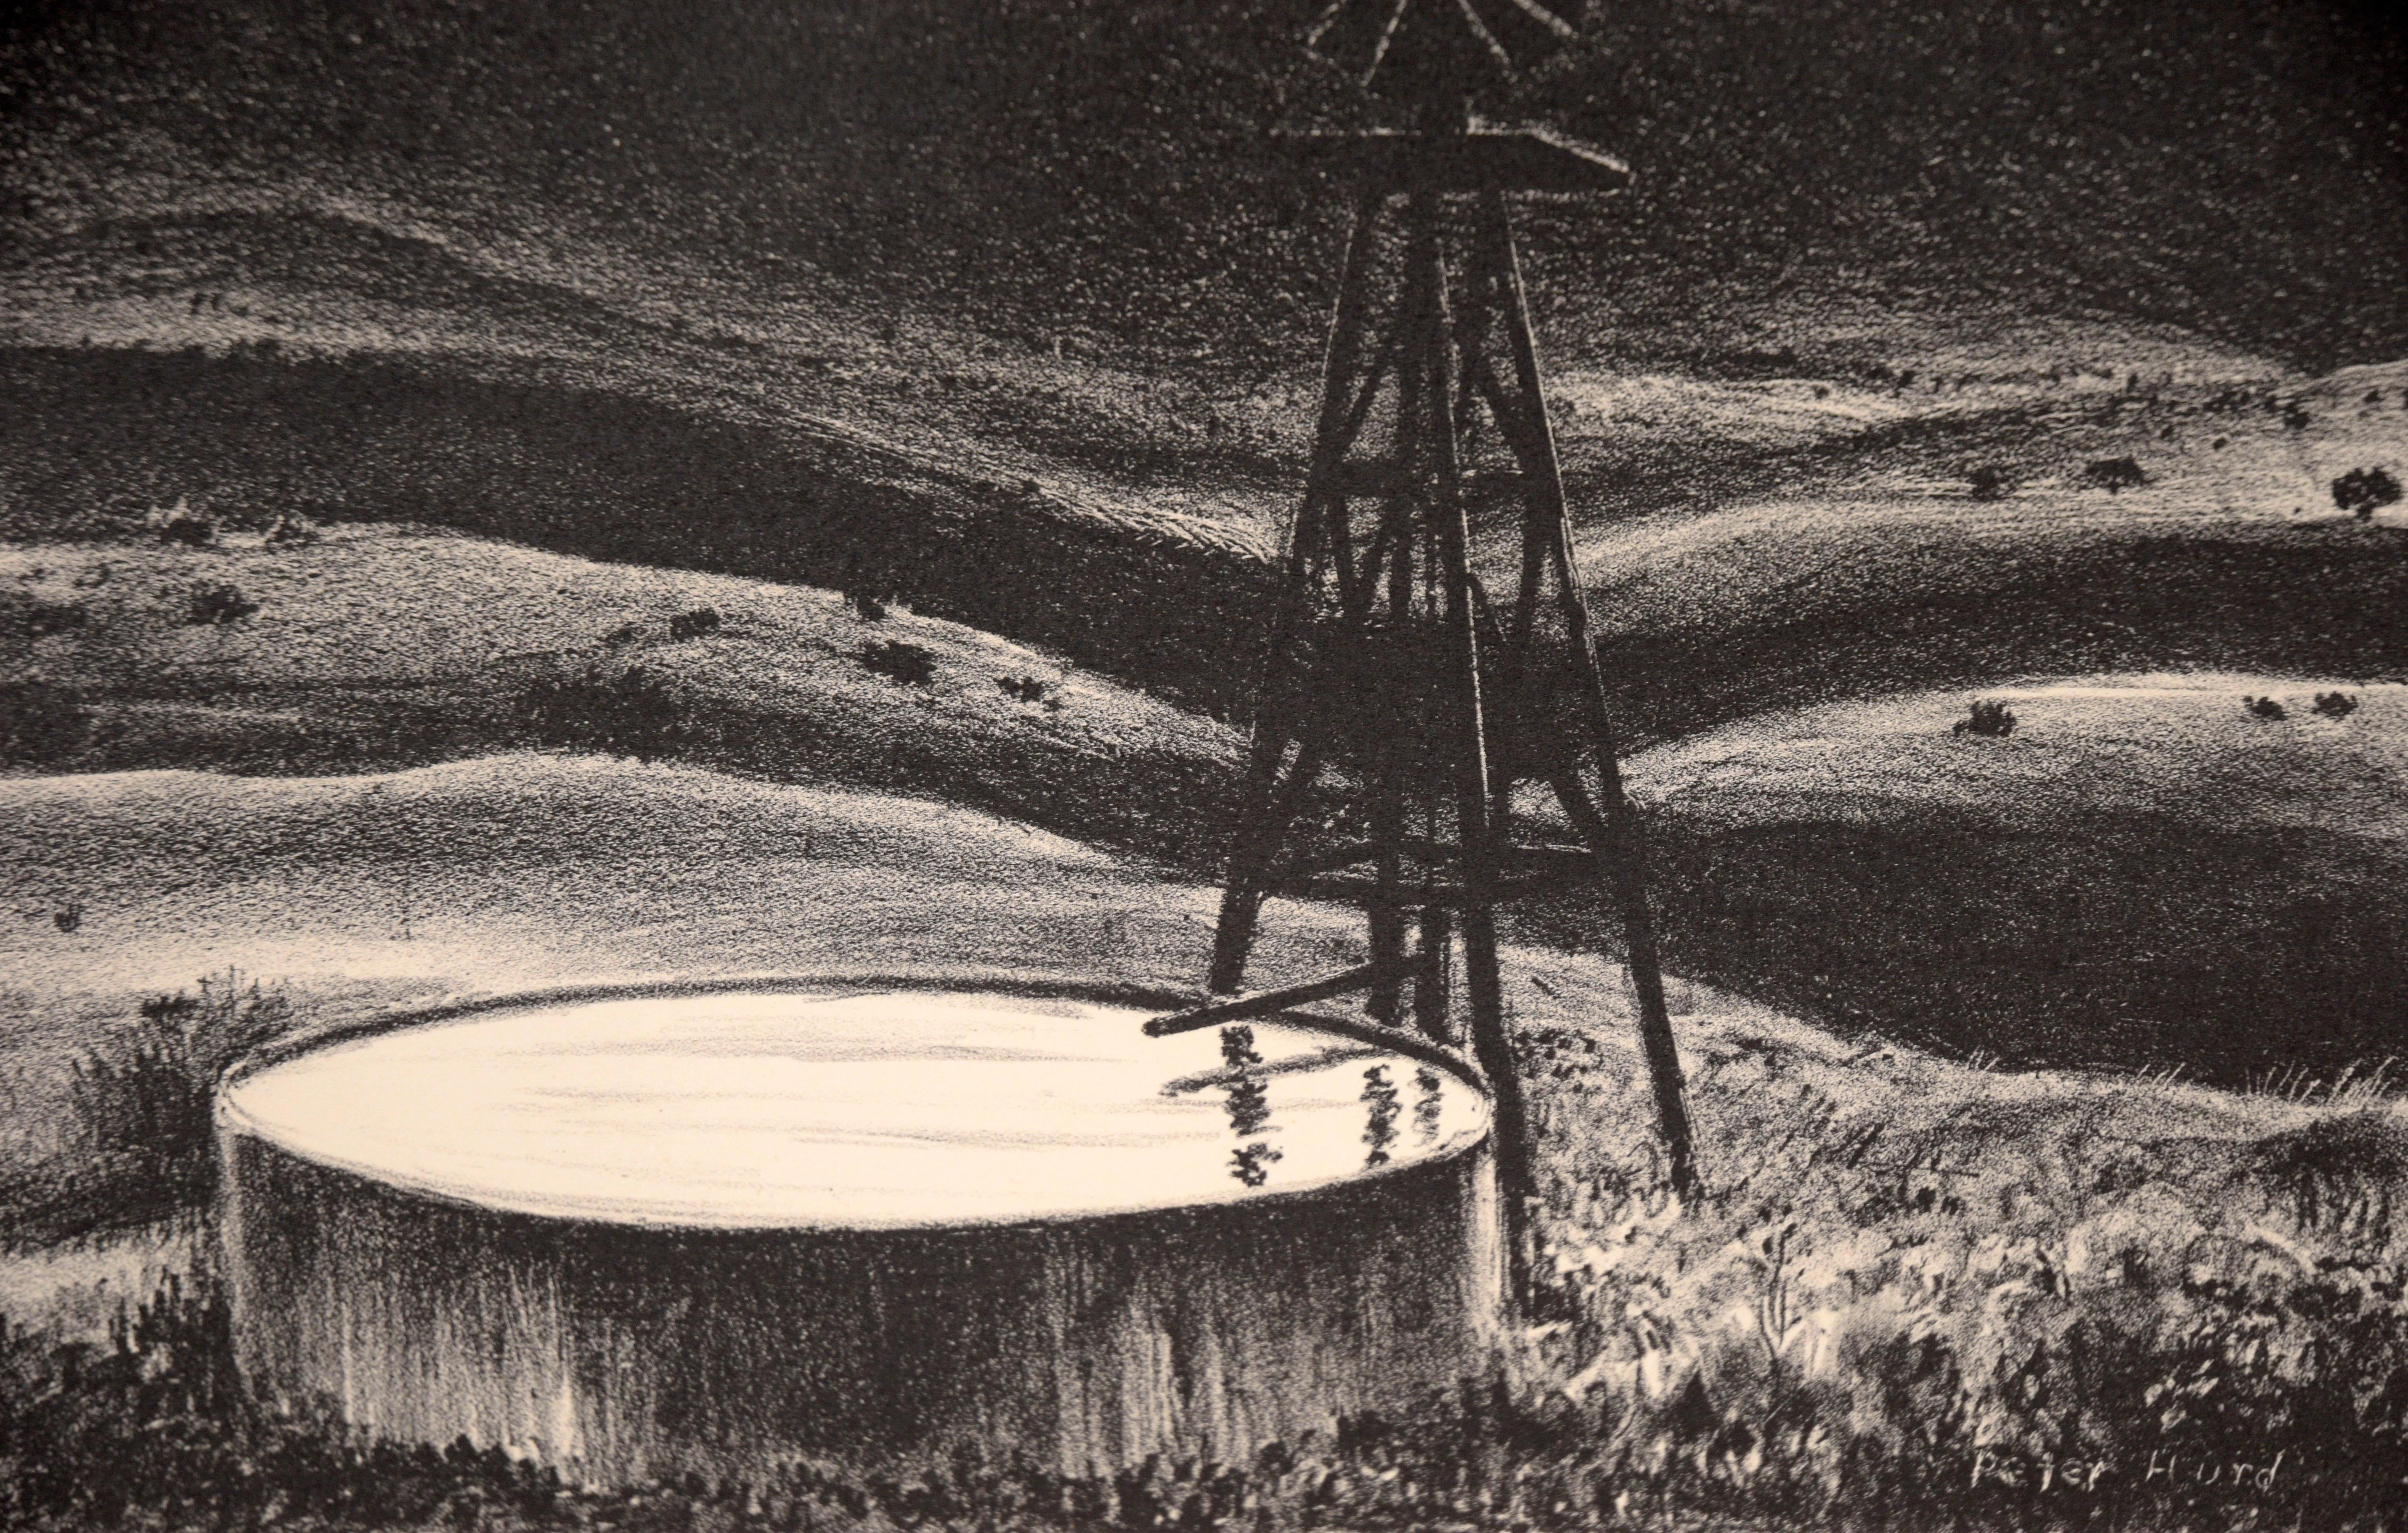 Windmill And Well At Dusk - Lithographie vintage originale

Lithographie originale vintage en noir et blanc d'un moulin à vent et d'un puits au crépuscule par Peters Hurd (américain, 1904-1984). 
Le spectateur contemple le désert du Nouveau-Mexique,